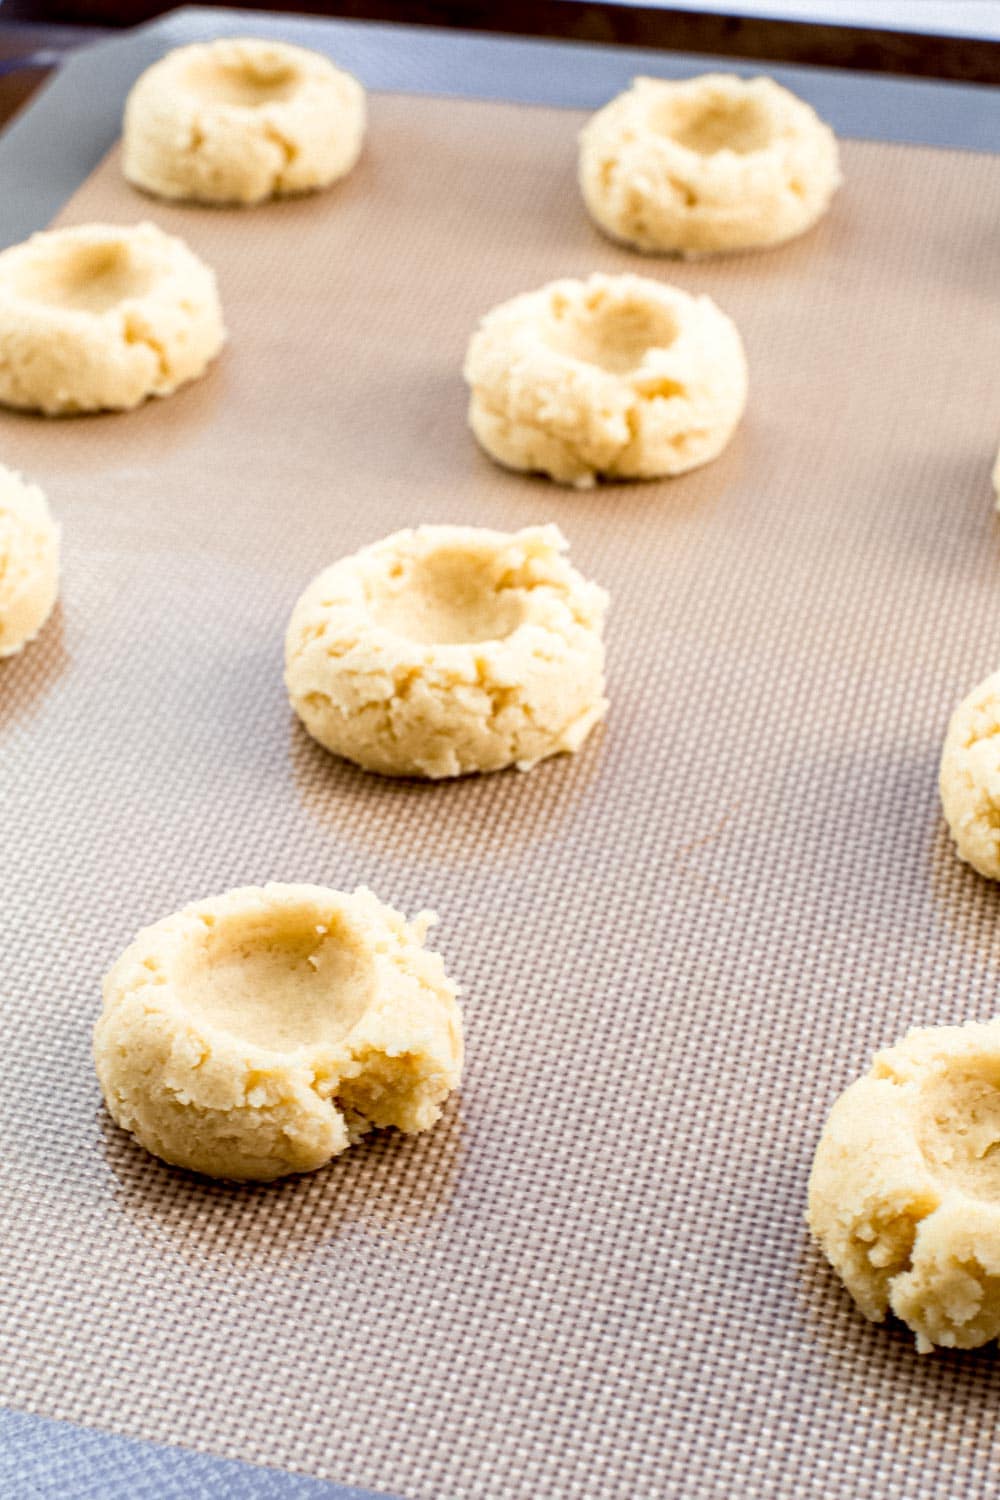 Thumbprint cookies on baking sheet.